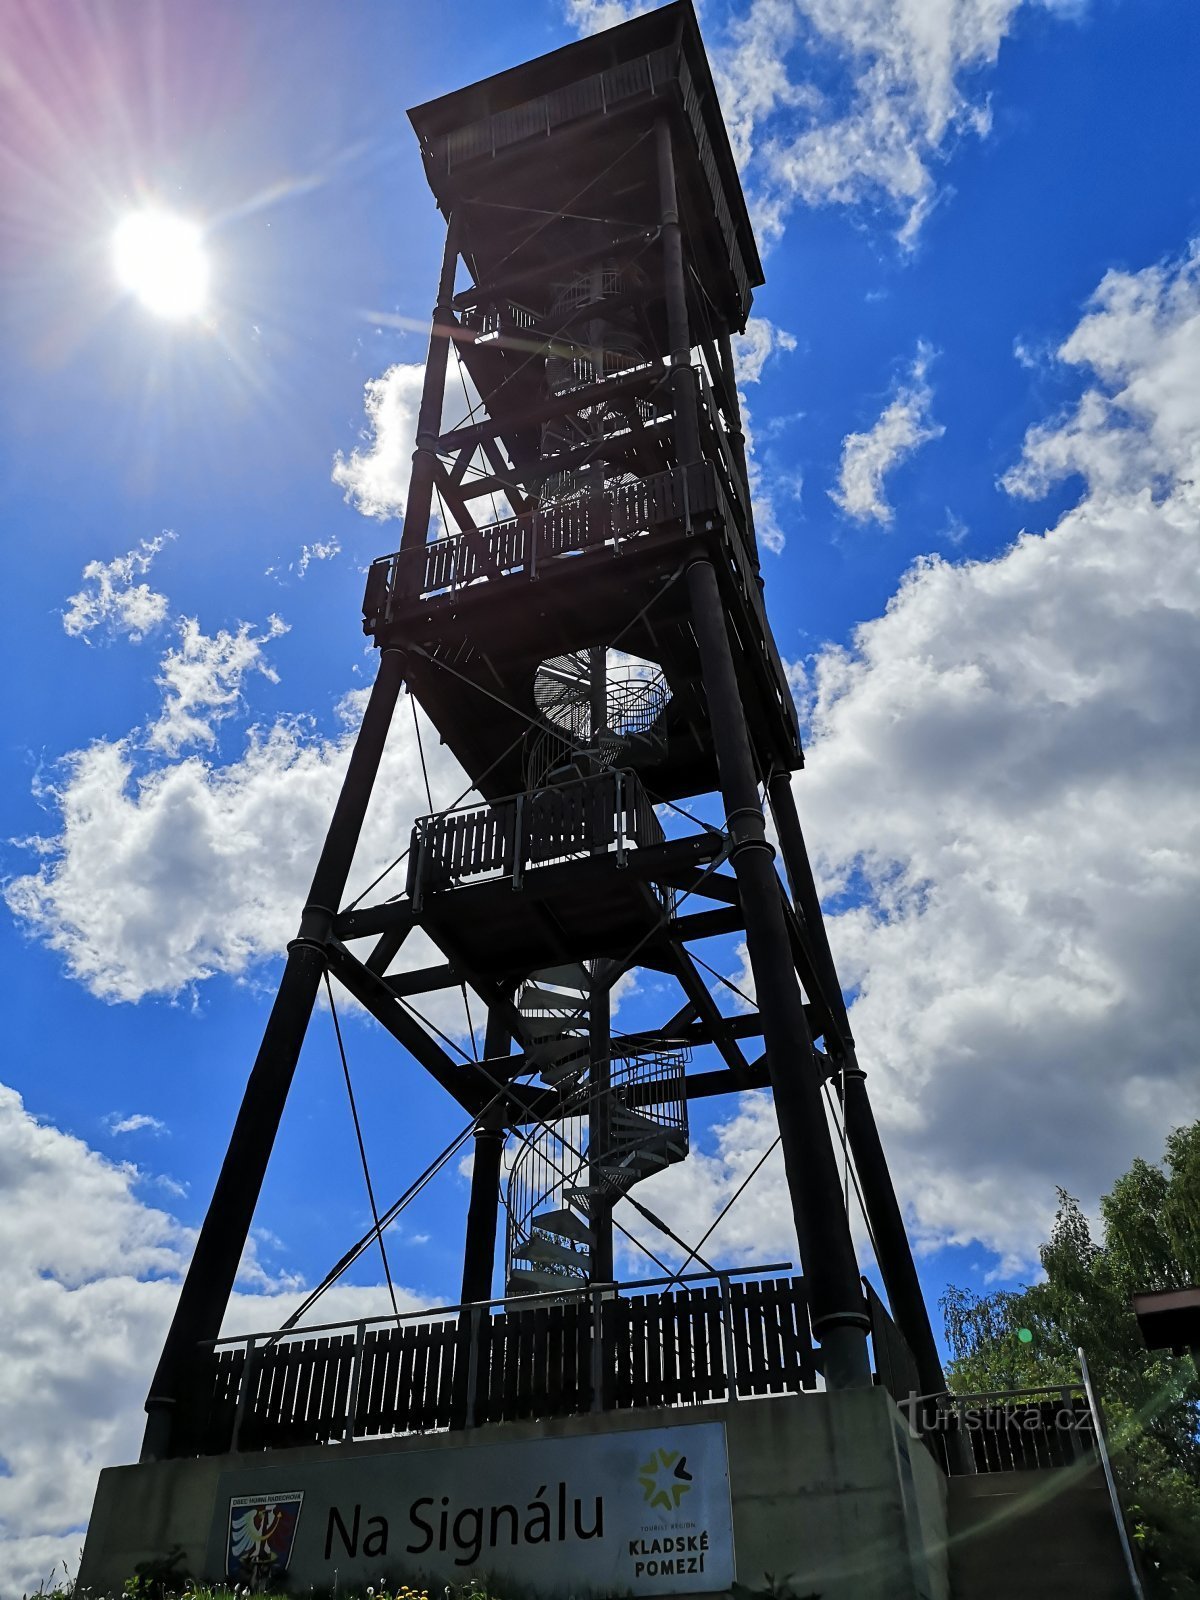 Torre de vigia em sinal